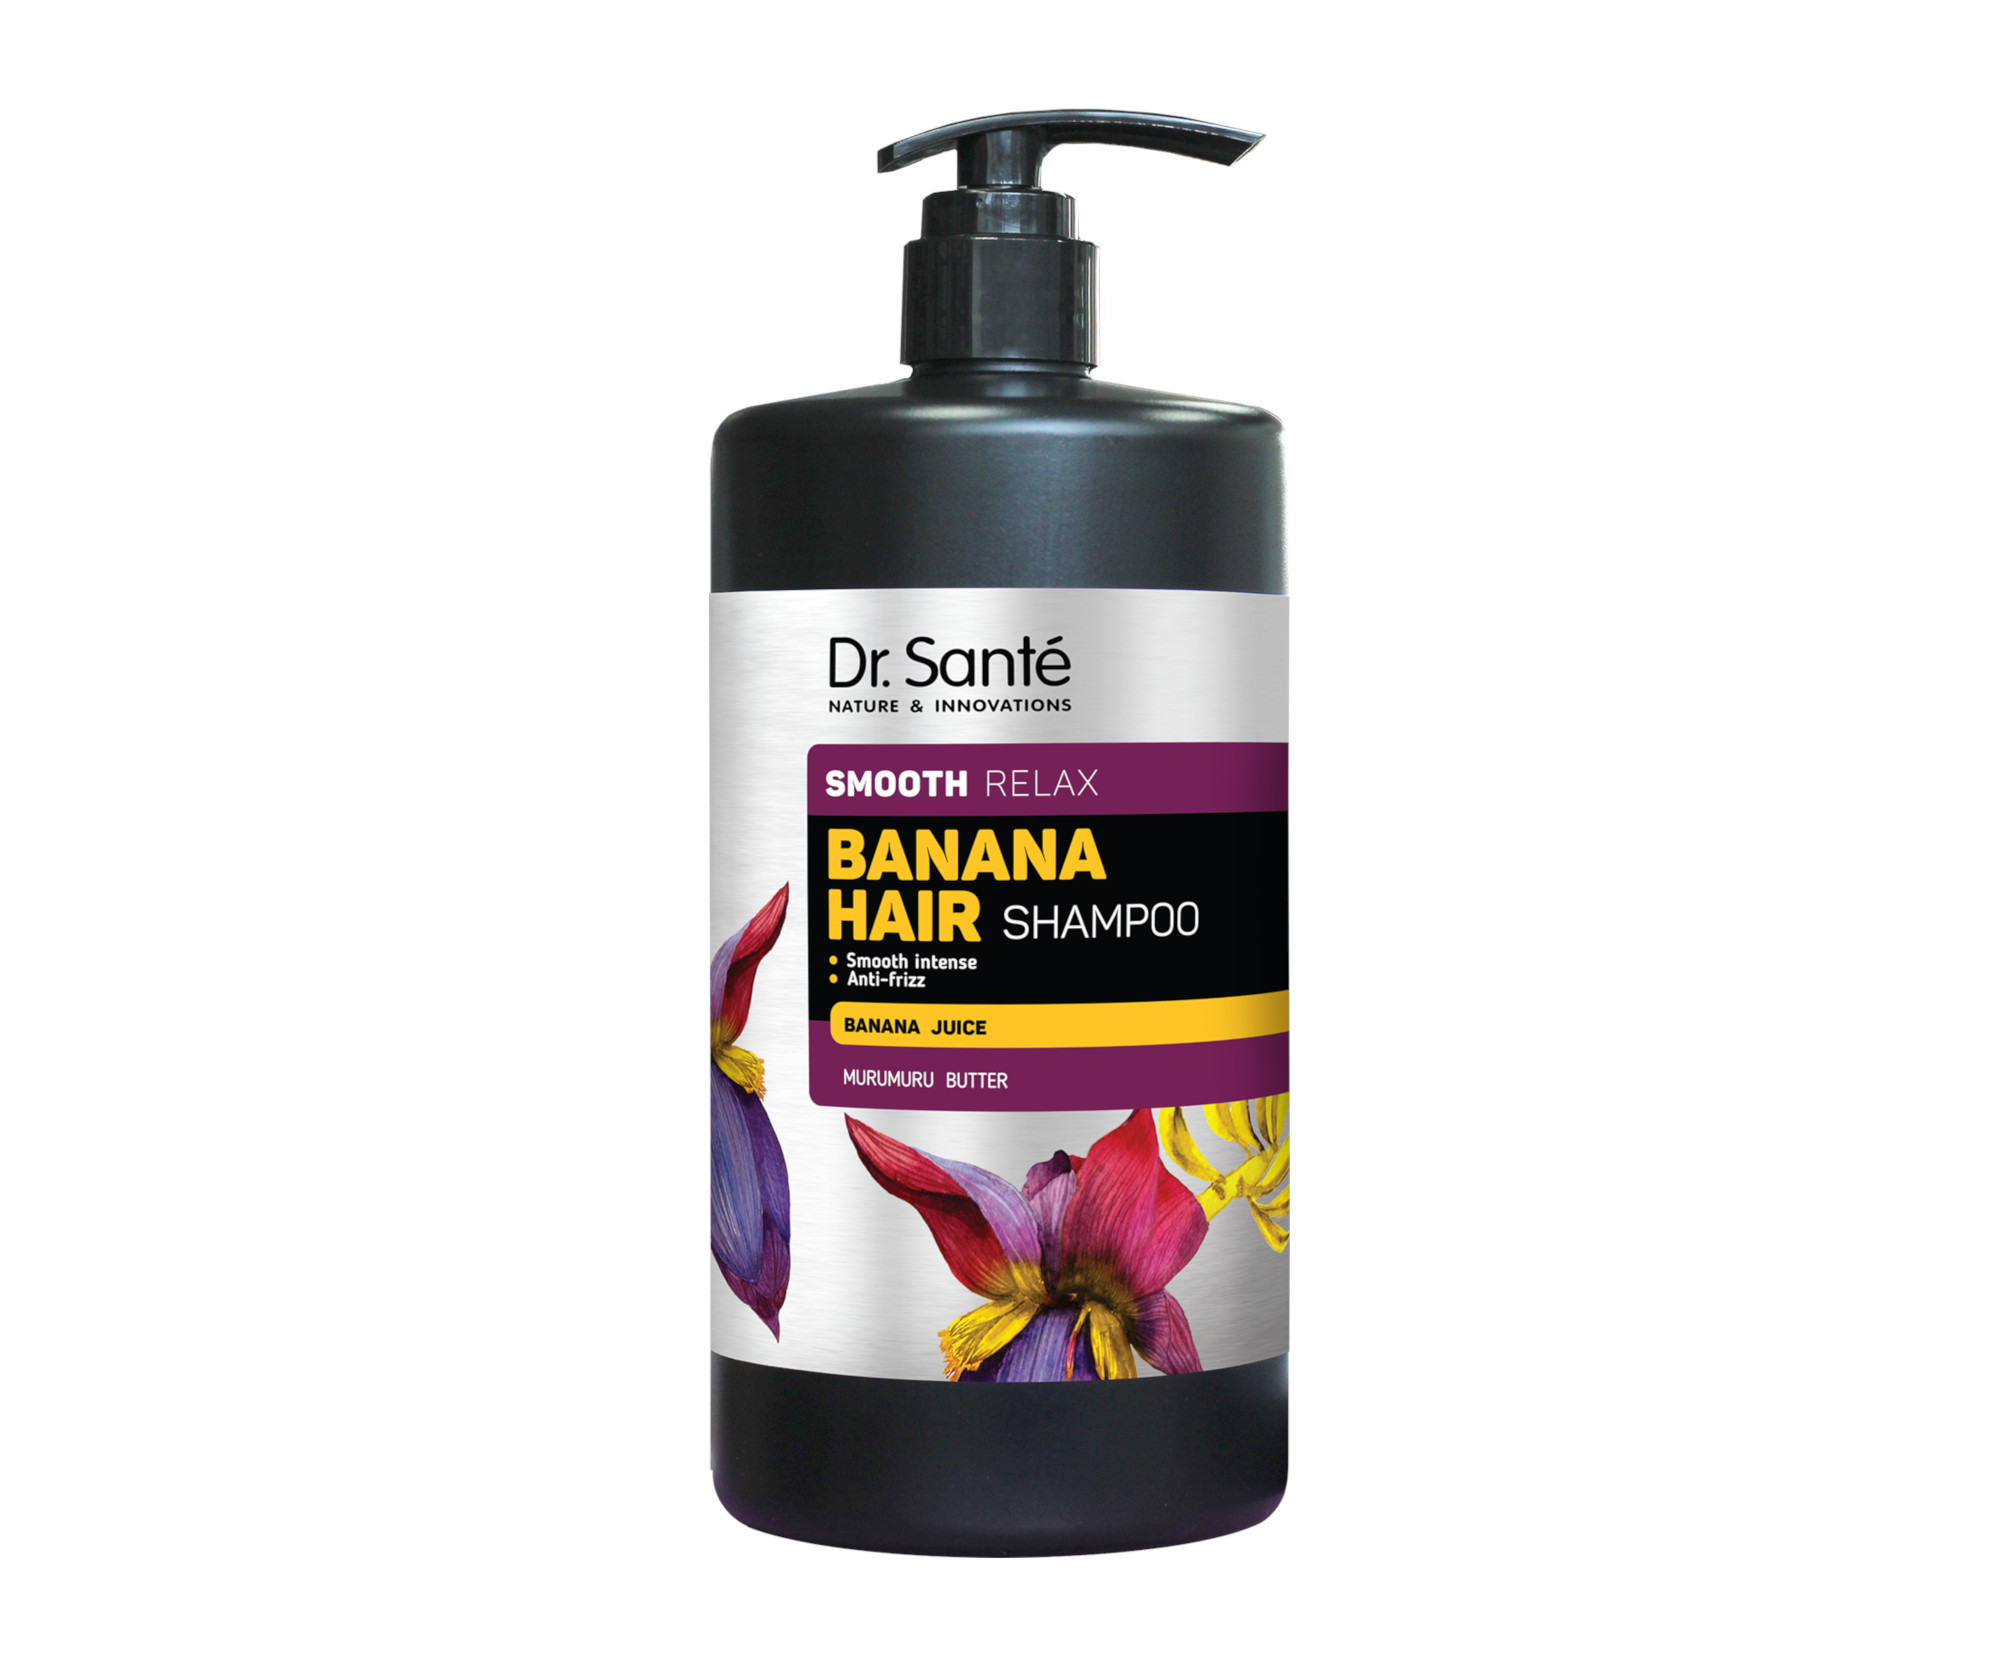 Šampon pro uhlazení vlasů Dr. Santé Smooth Relax Banana Hair Shampoo - 1000 ml + dárek zdarma